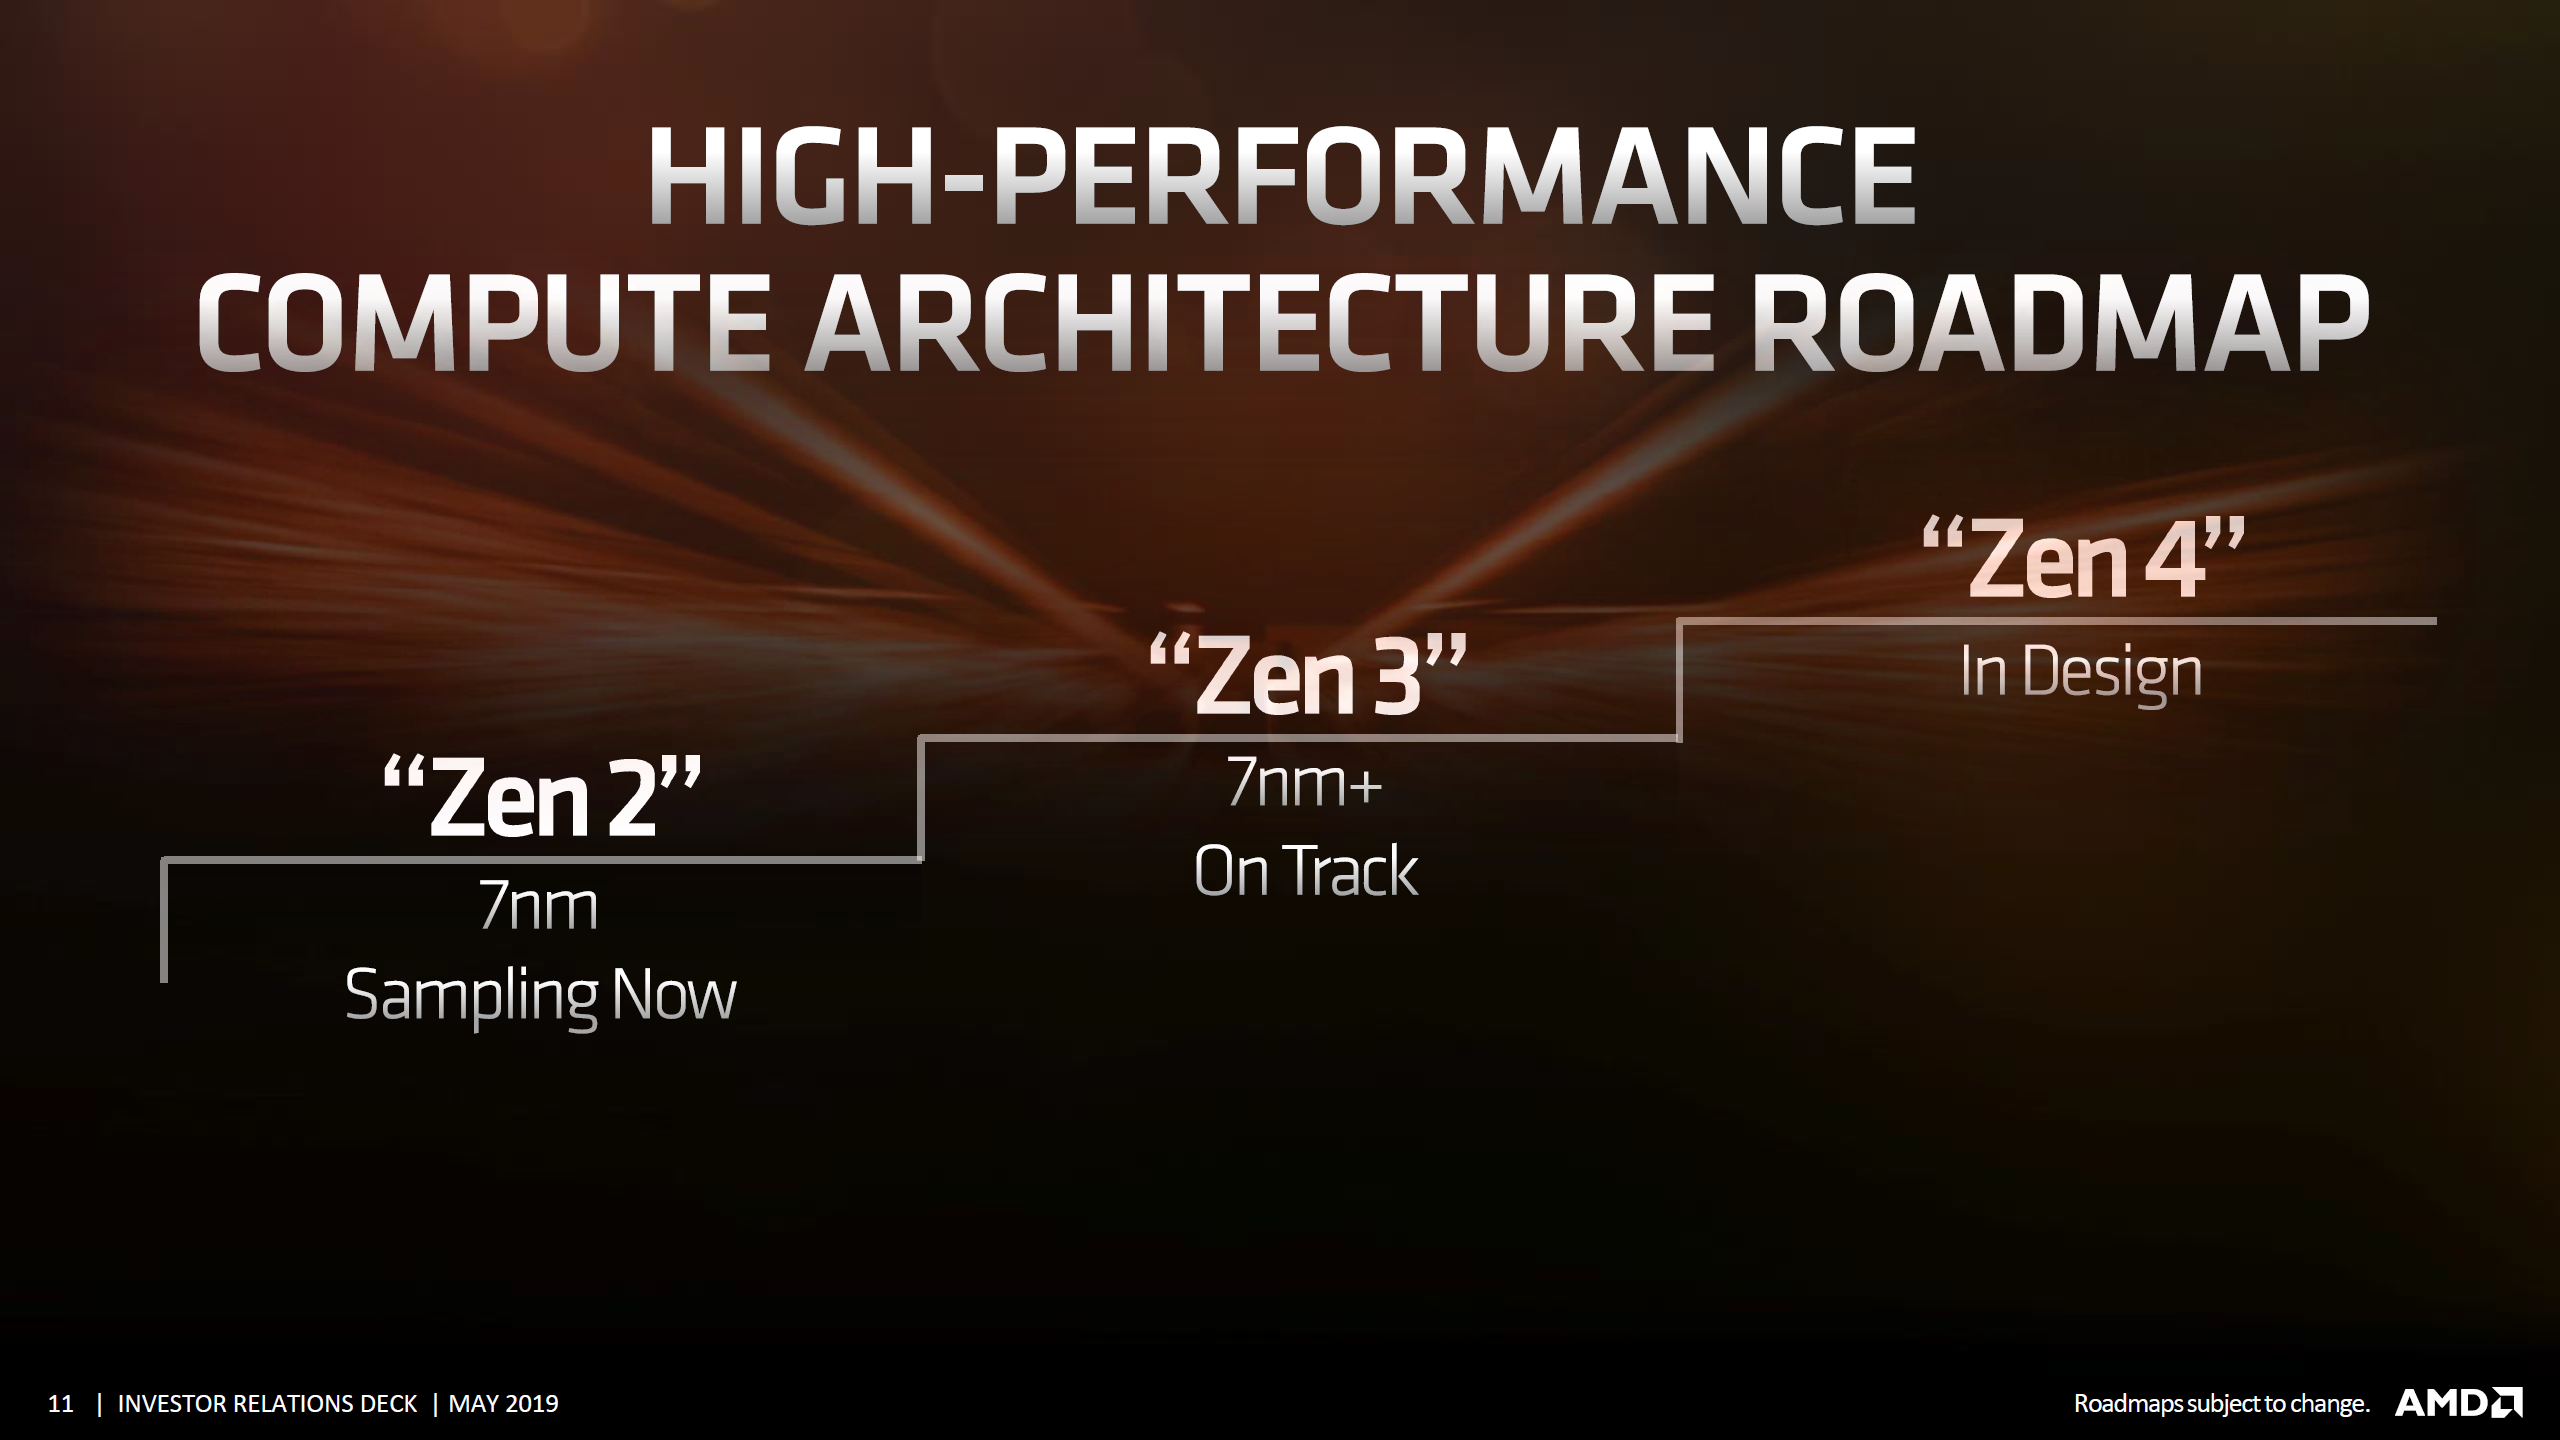 amd cpu gpu roadmap investor presentation 2 AMD เผยซีพียูในสถาปัตย์ ZEN3 ขนาด 7nm+ ออกแบบเสร็จเรียบร้อยและมีประสิทธิภาพ IPC ดีขึ้นกว่าเดิม 15เปอร์เซ็นเลยทีเดียว 